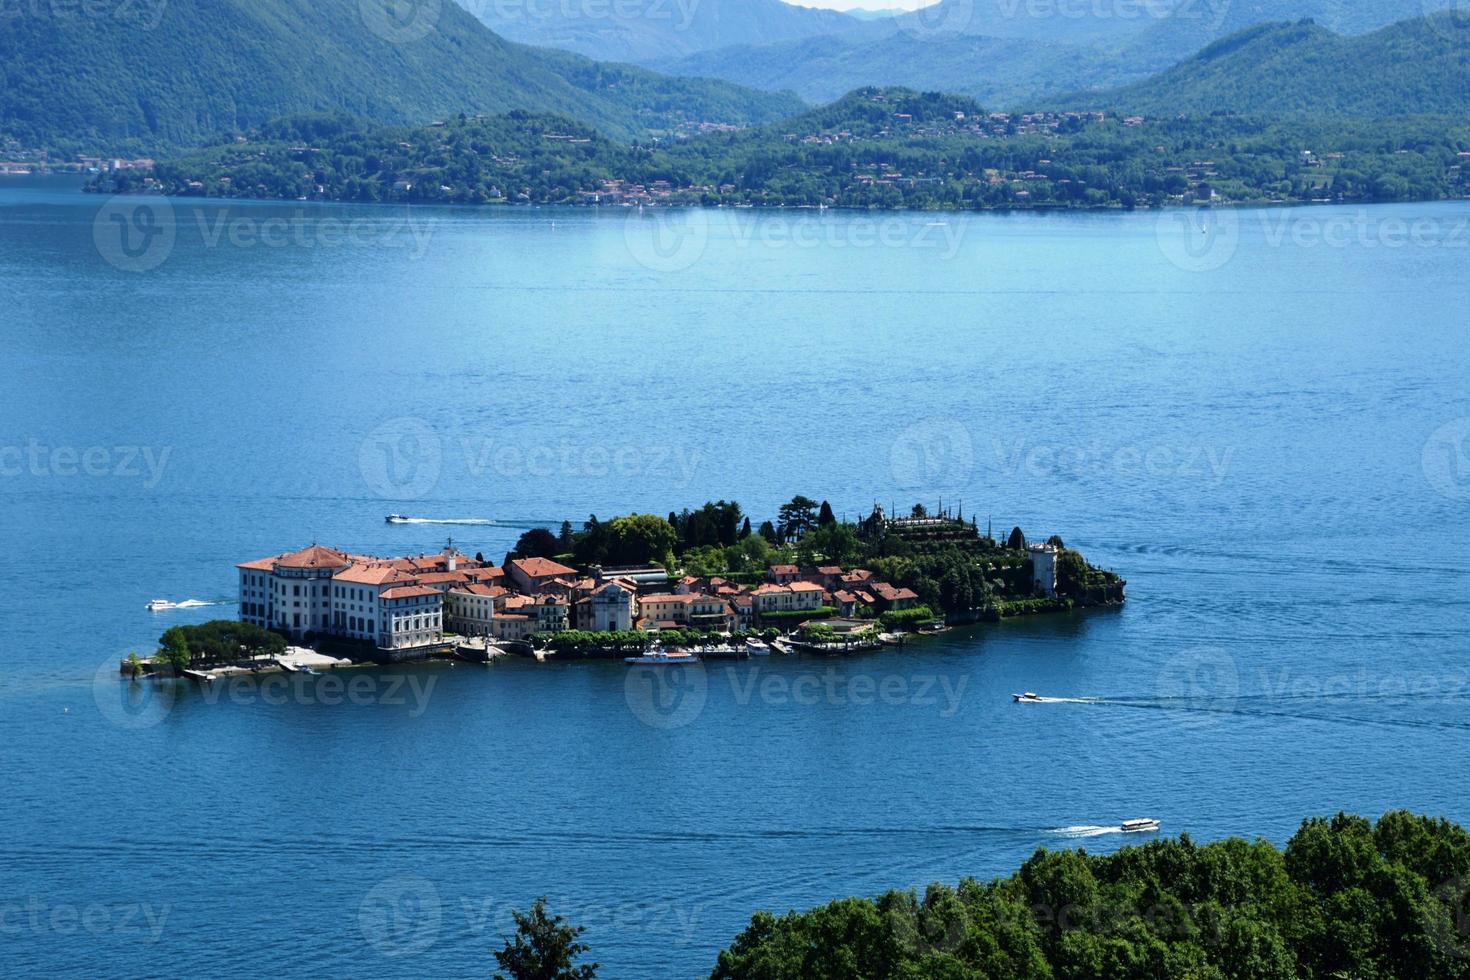 isola bella lago maggiore i italien foto